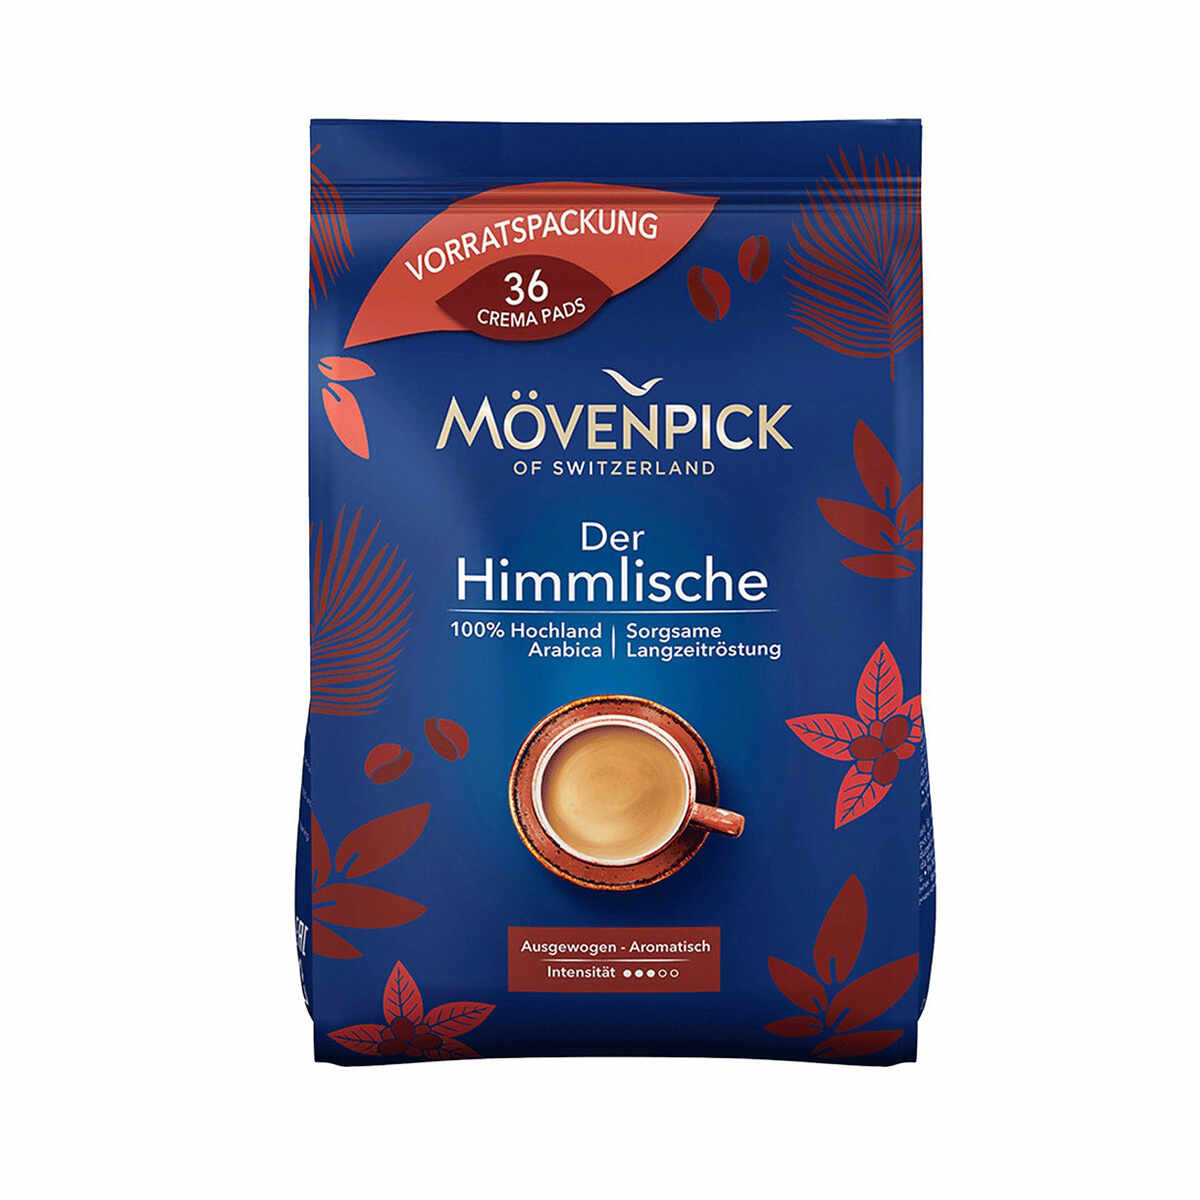 Movenpick Der Himmlische Pads pentru Senseo 36 buc